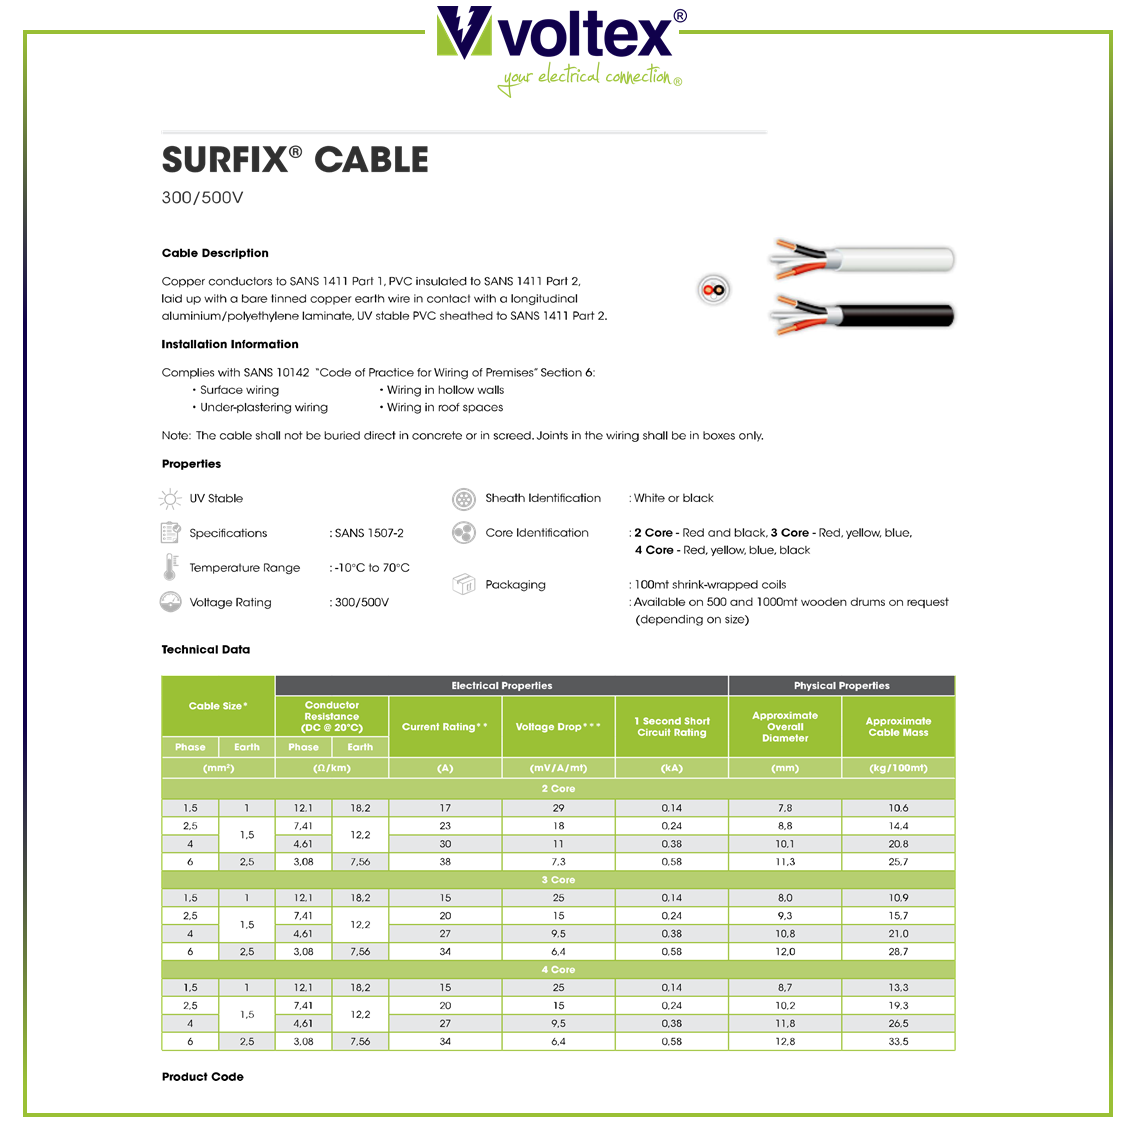 VOLTEX - Surfix Cable Catalogue